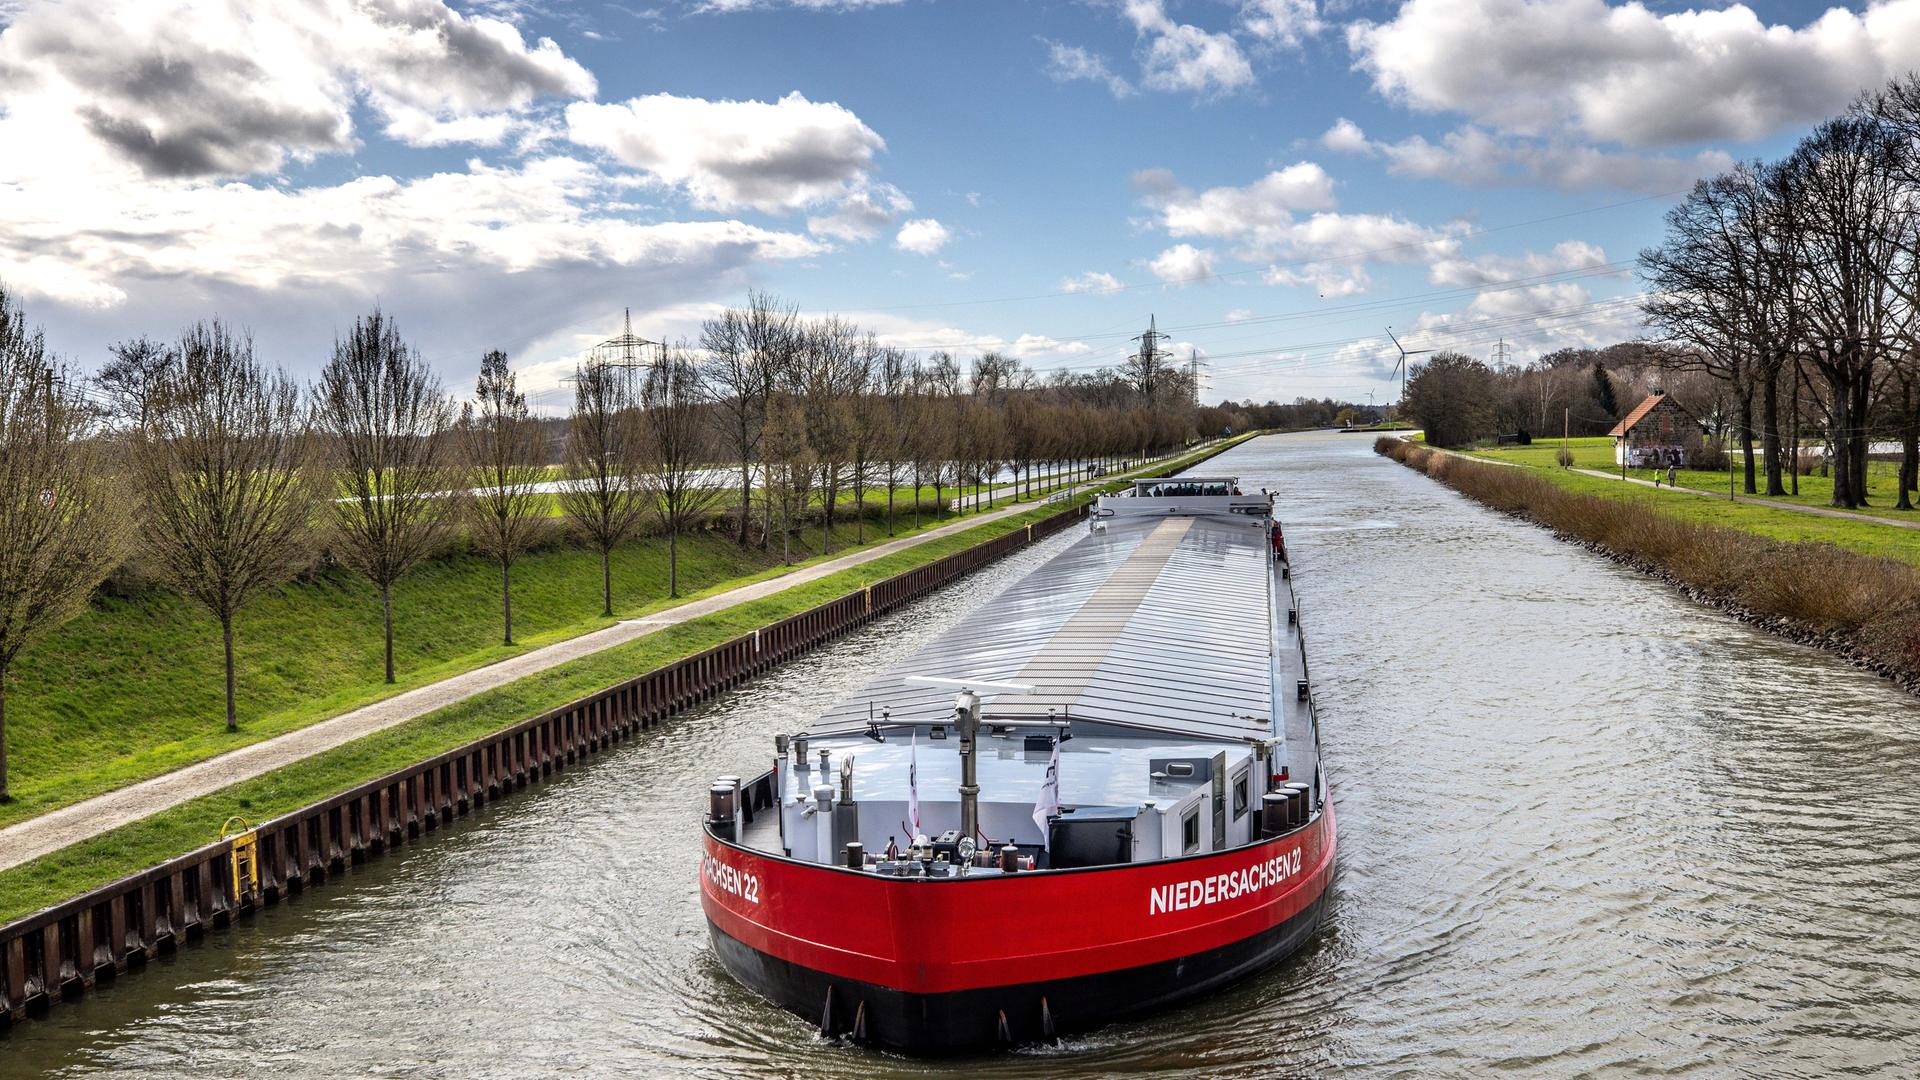 Das Schiff fährt durch den Dortmund-Ems-Kanal. Es trägt den Namen "Niedersachsen 22" in weißer Schrift auf dem rot lackierten Schiff.